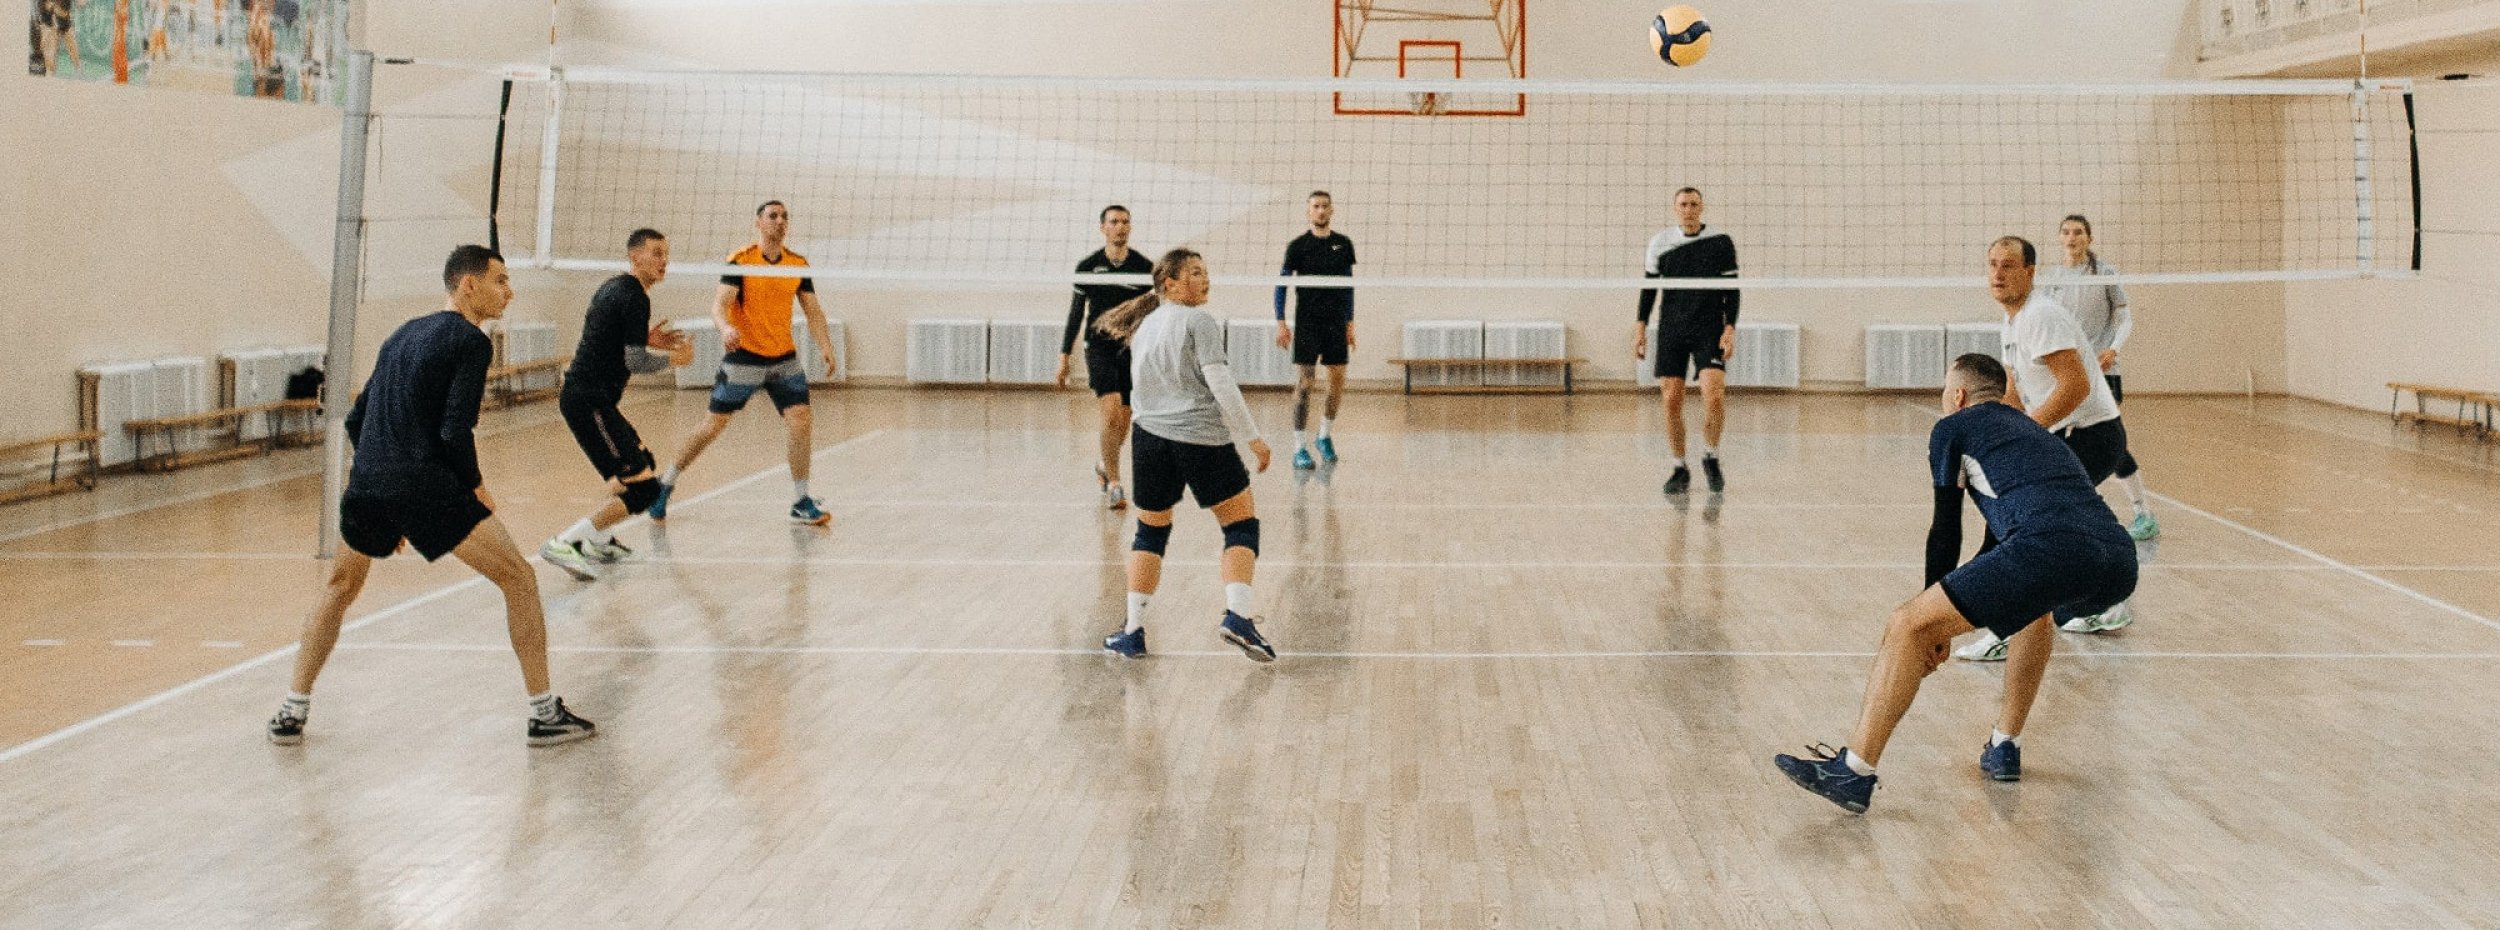 Un groupe de personne joue au volley en salle intérieur